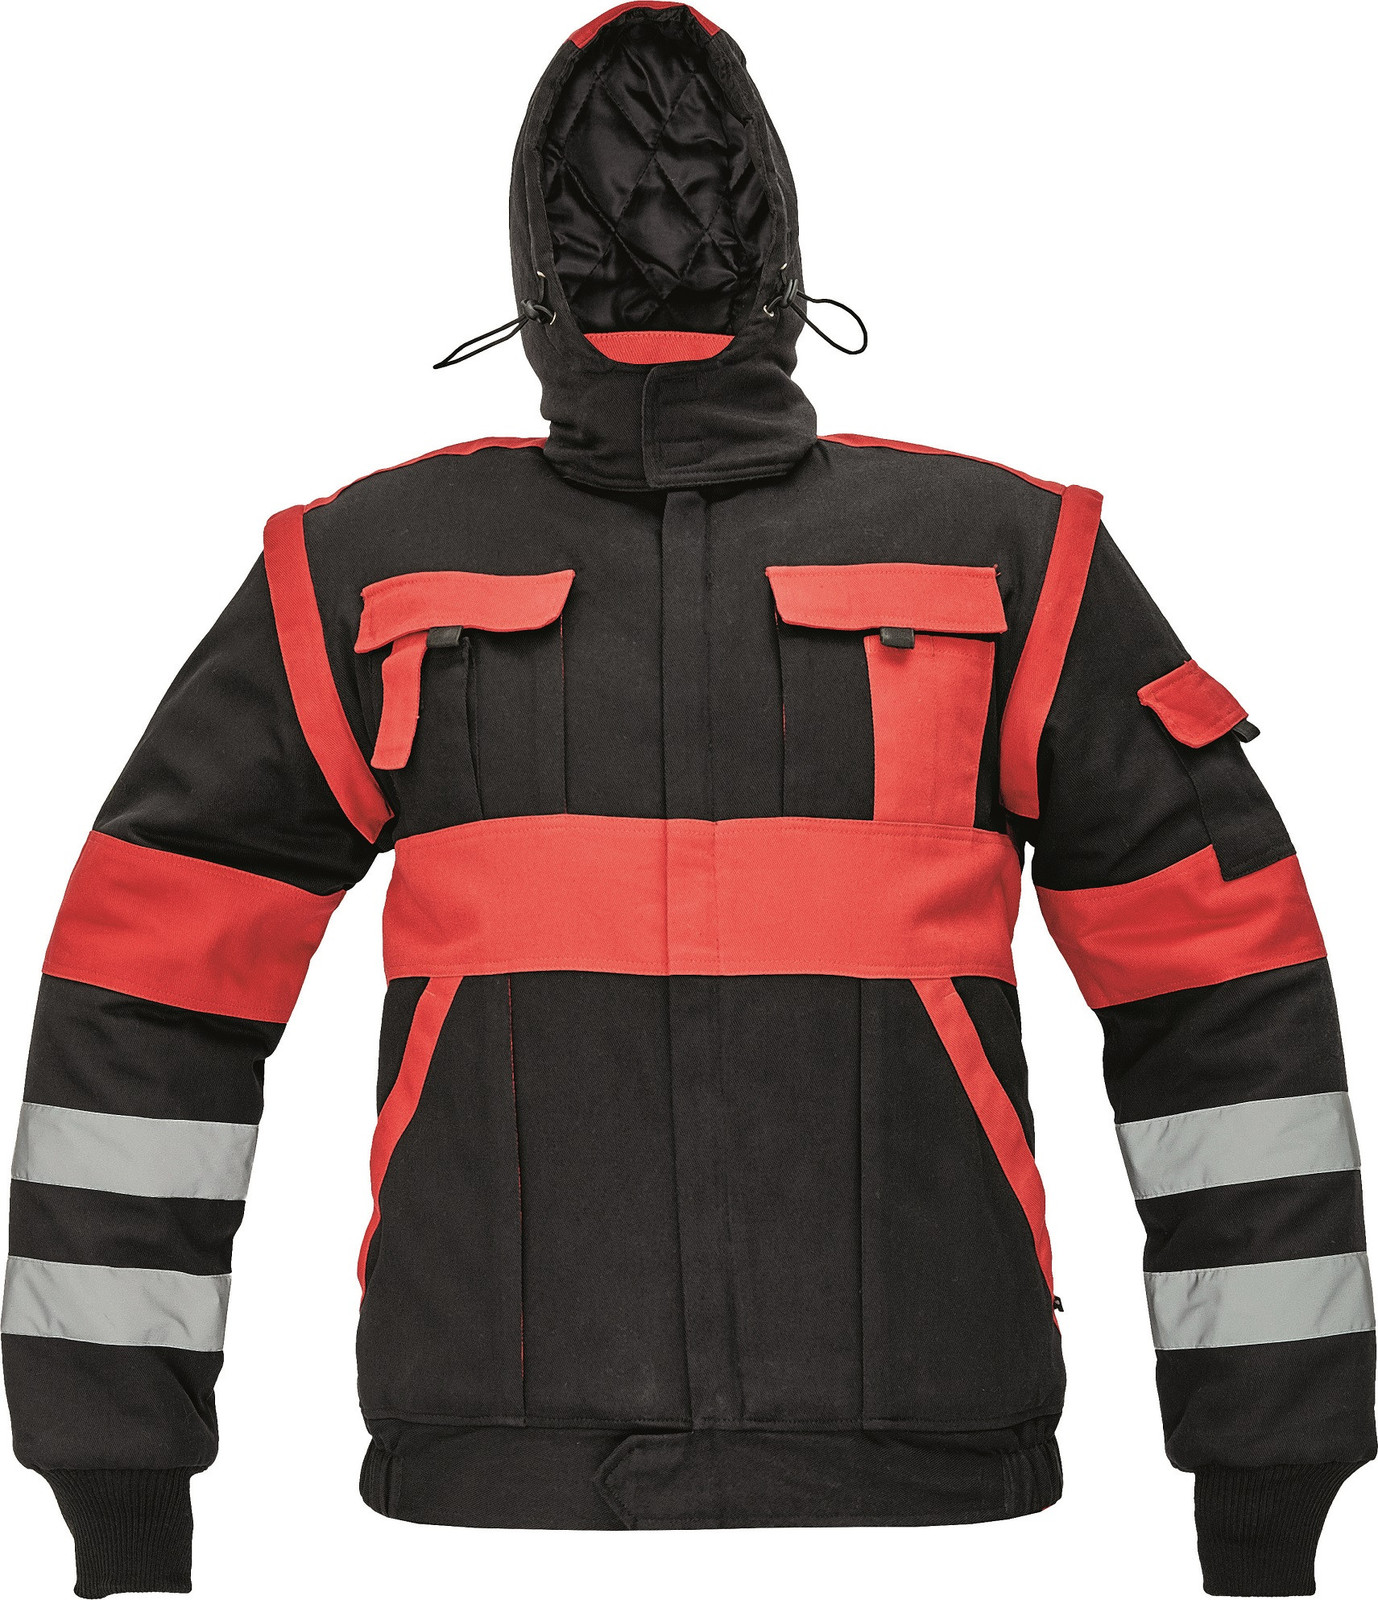 Zateplená montérková bunda Max Winter s reflexnými pruhmi 2v1 - veľkosť: 46, farba: čierna/červená